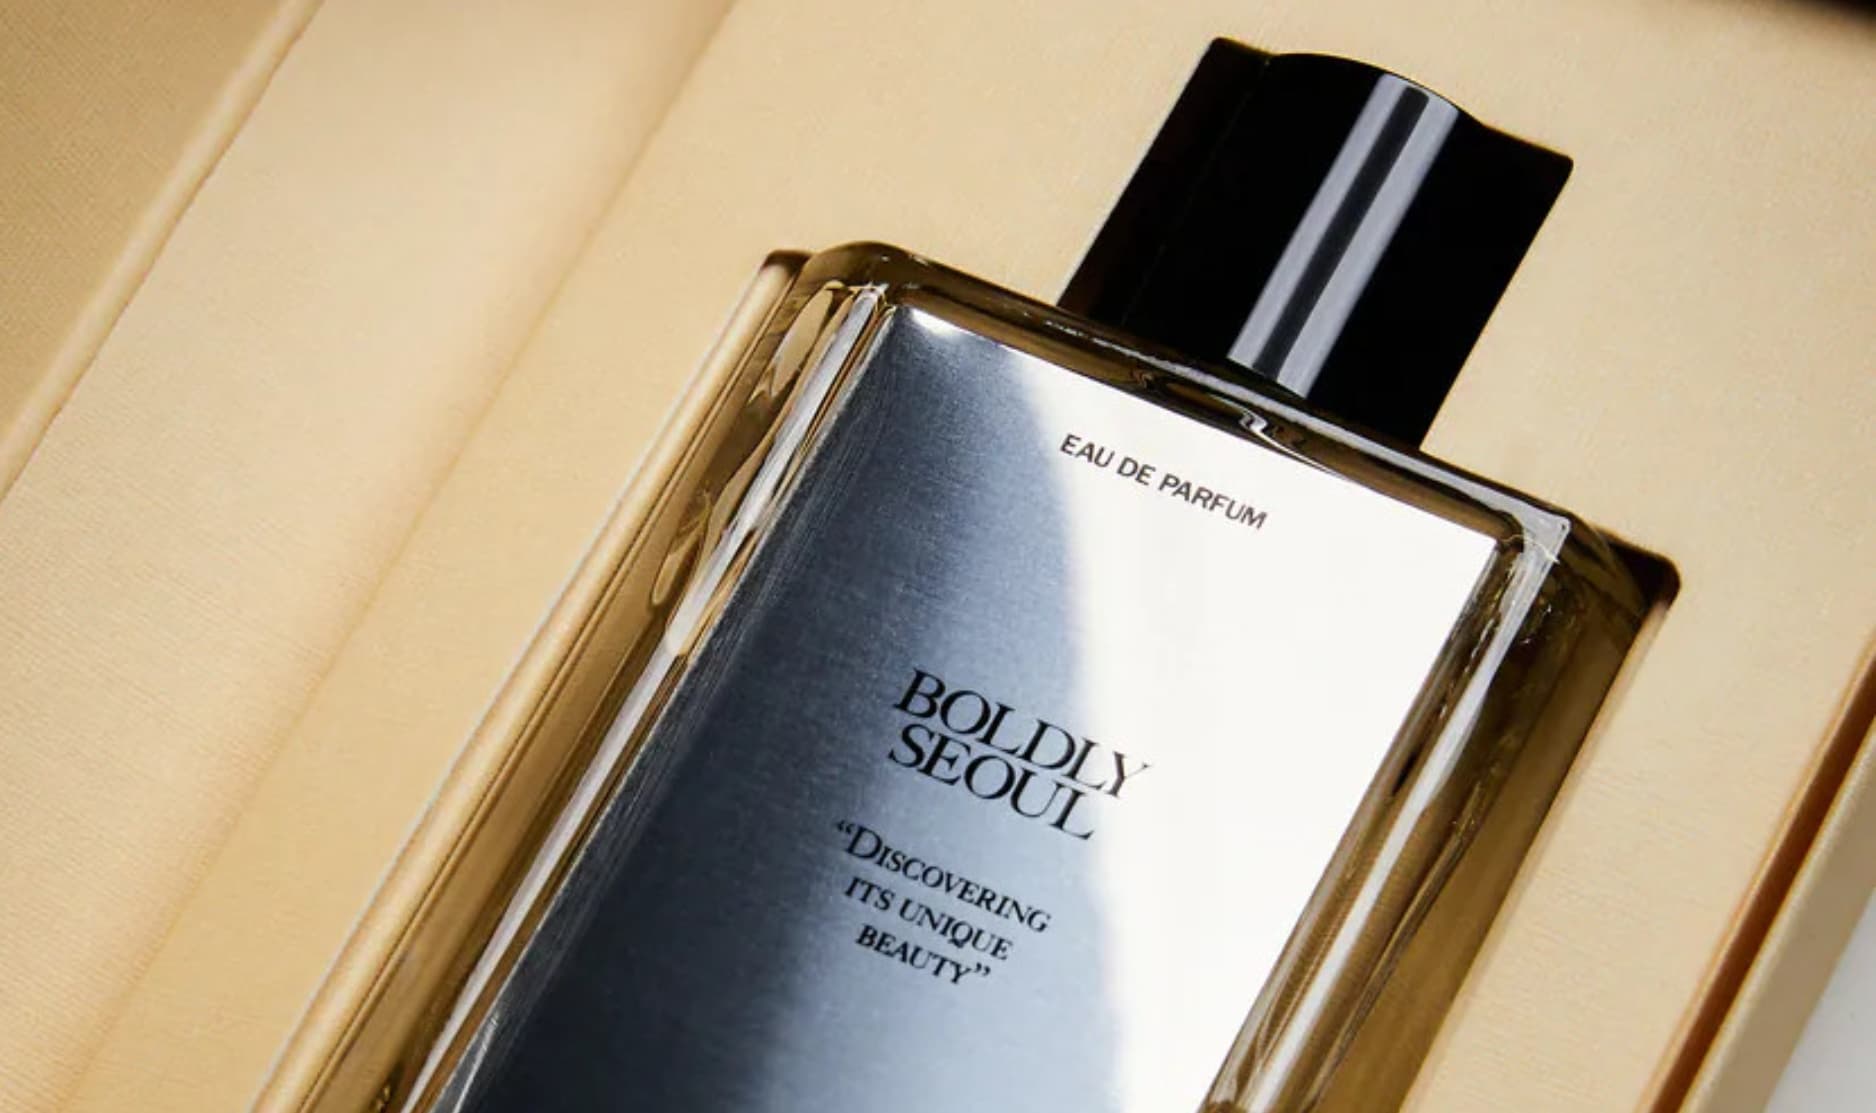 Zara lanzó su nueva línea de perfumes inspirada en ciudades del mundo